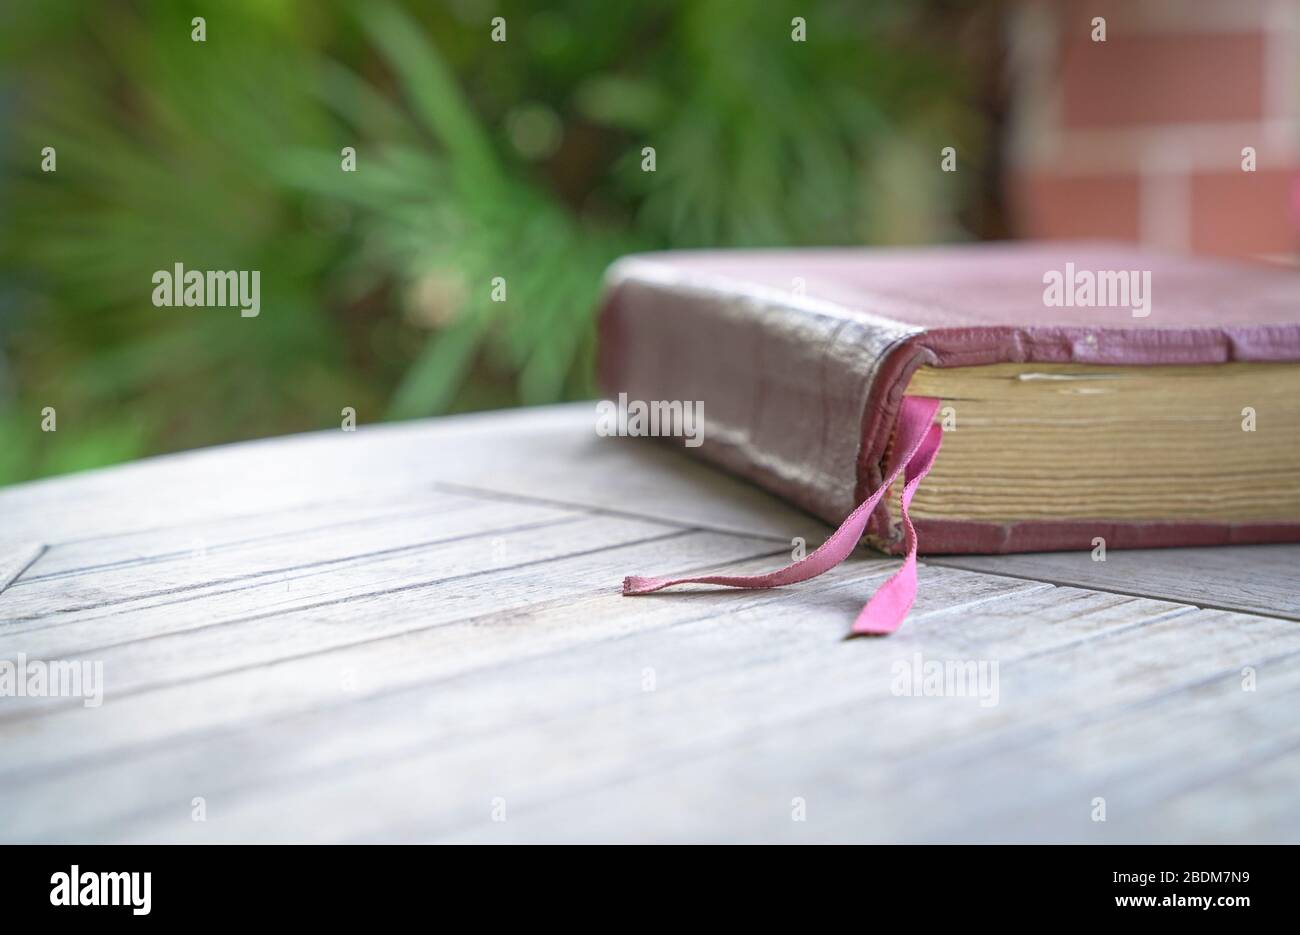 Sacra Bibbia con copertina marrone sul tavolo in legno. Sfocatura morbida con messa a fuoco sul marchio del libro in tessuto. Foto Stock